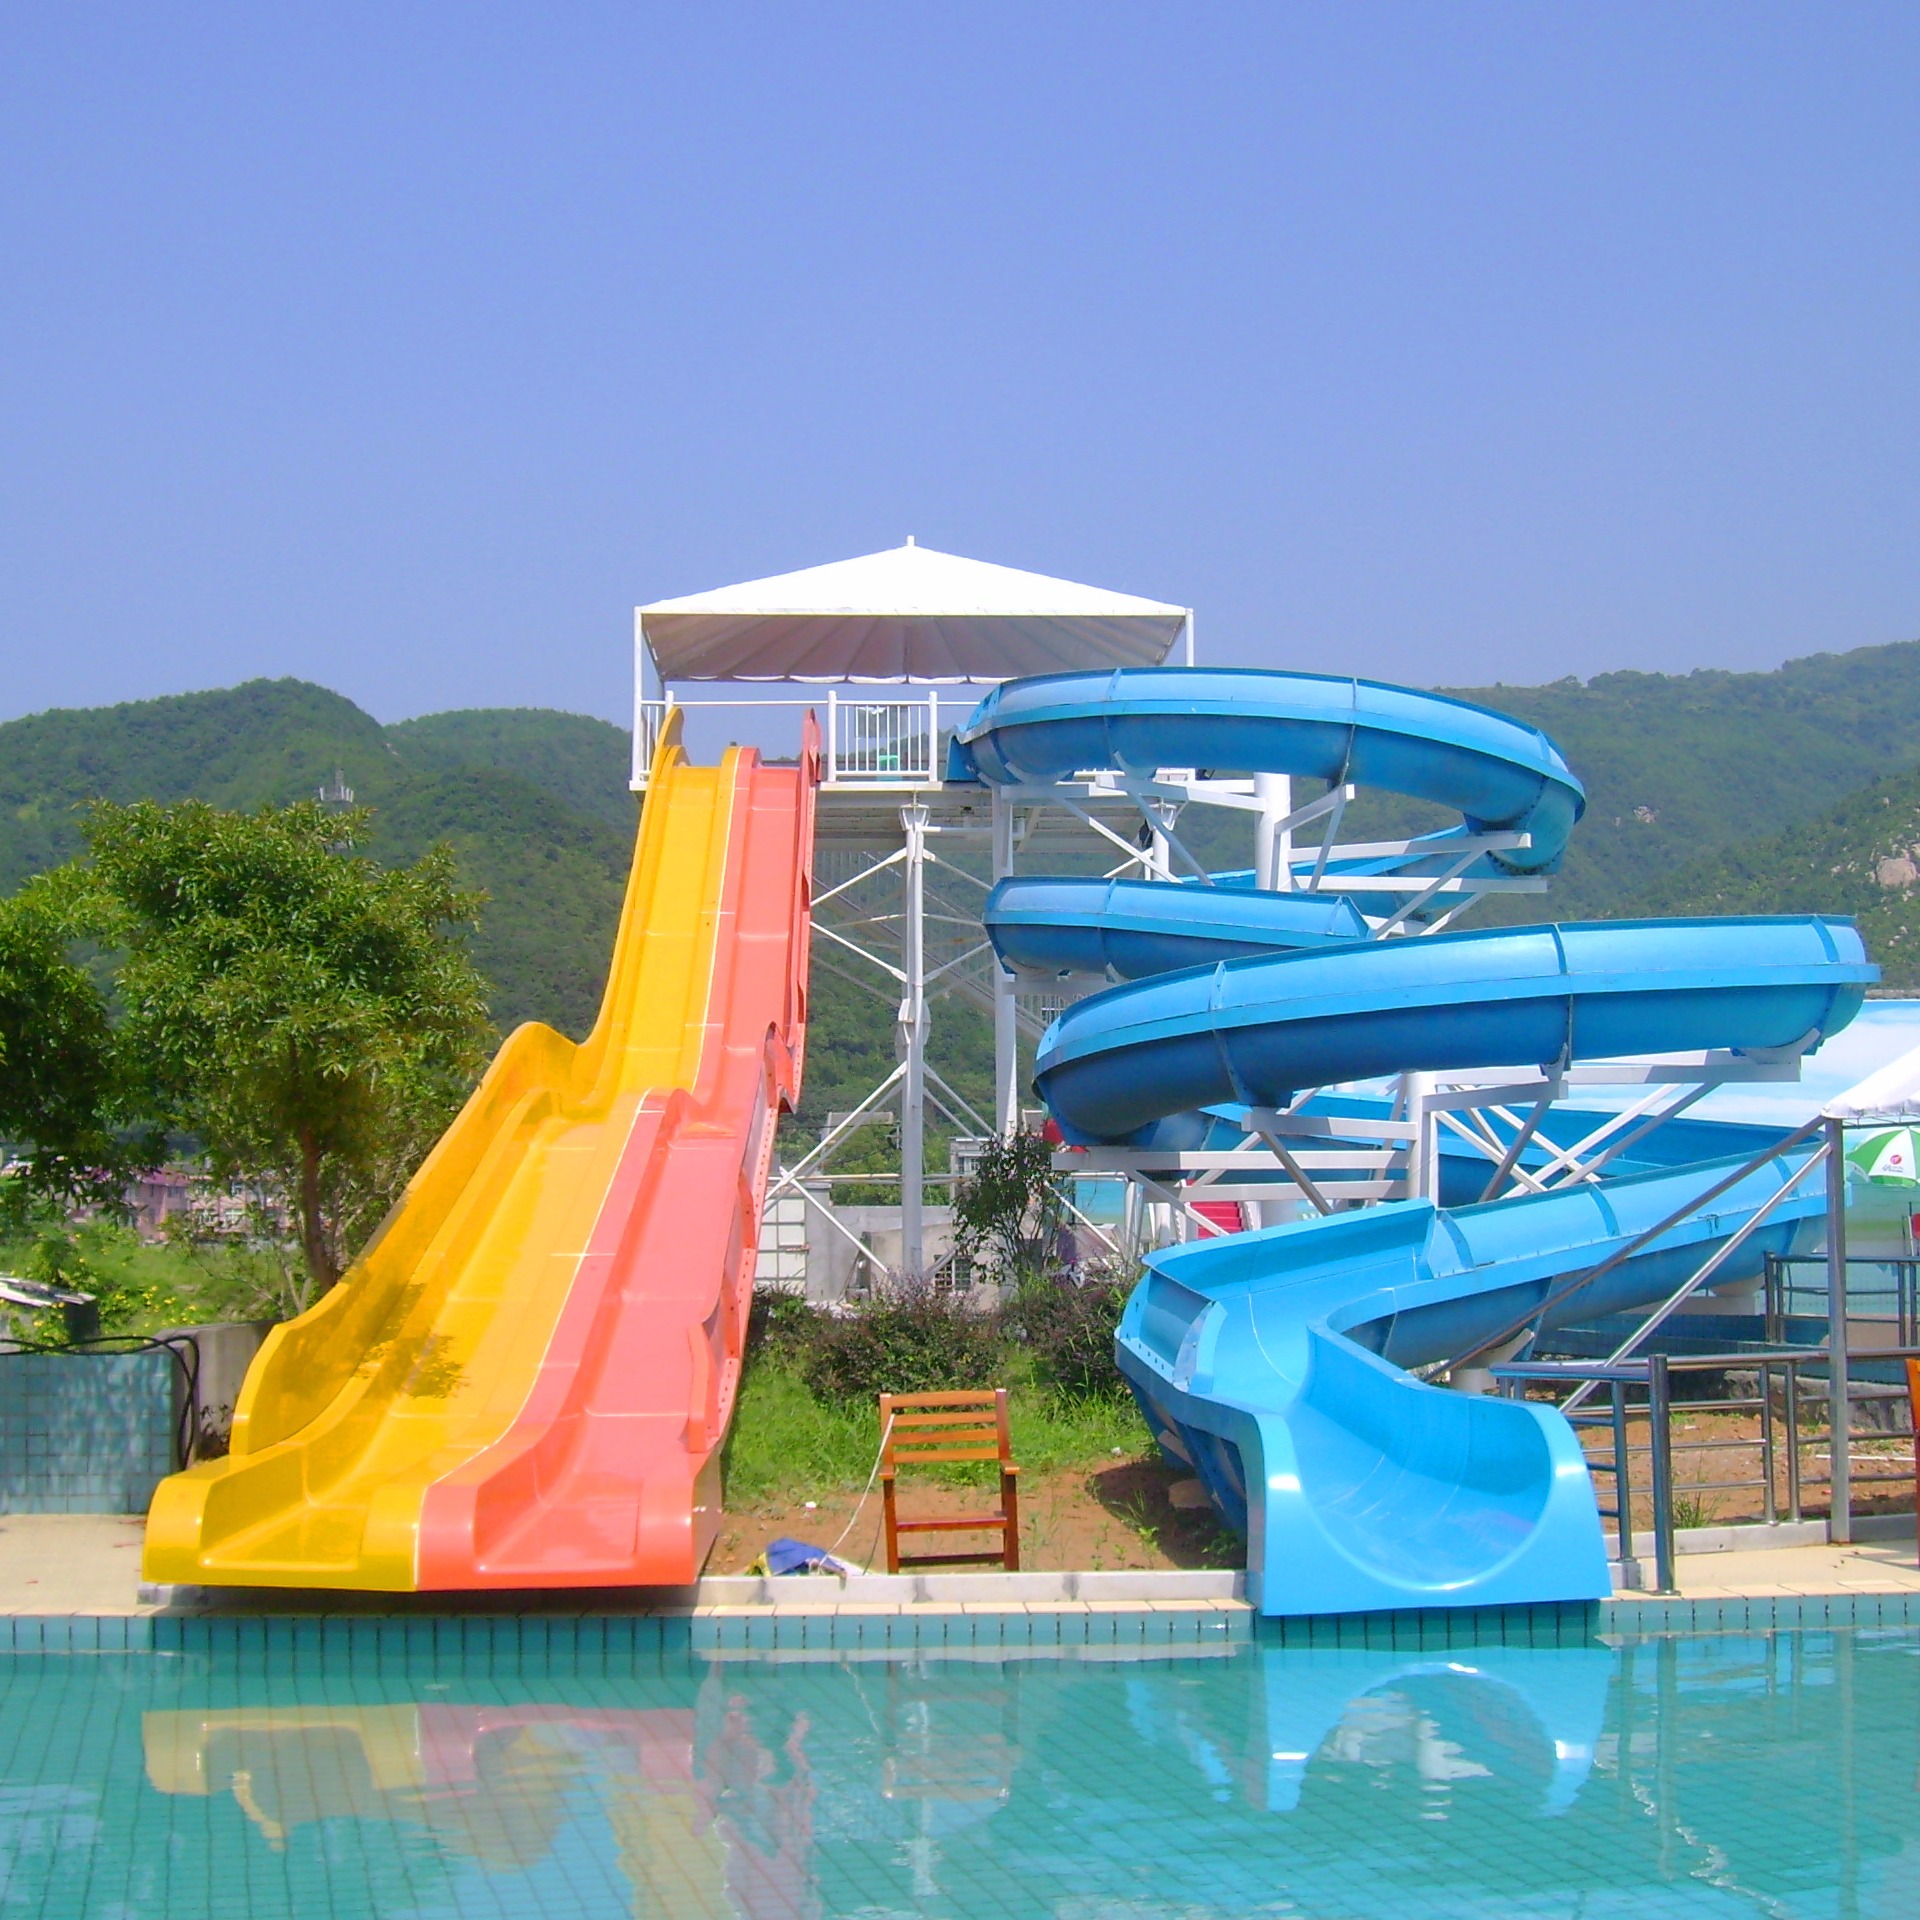 广州沁浪供应,水上乐园设备,水上乐园设施,组合滑梯,惊险刺激